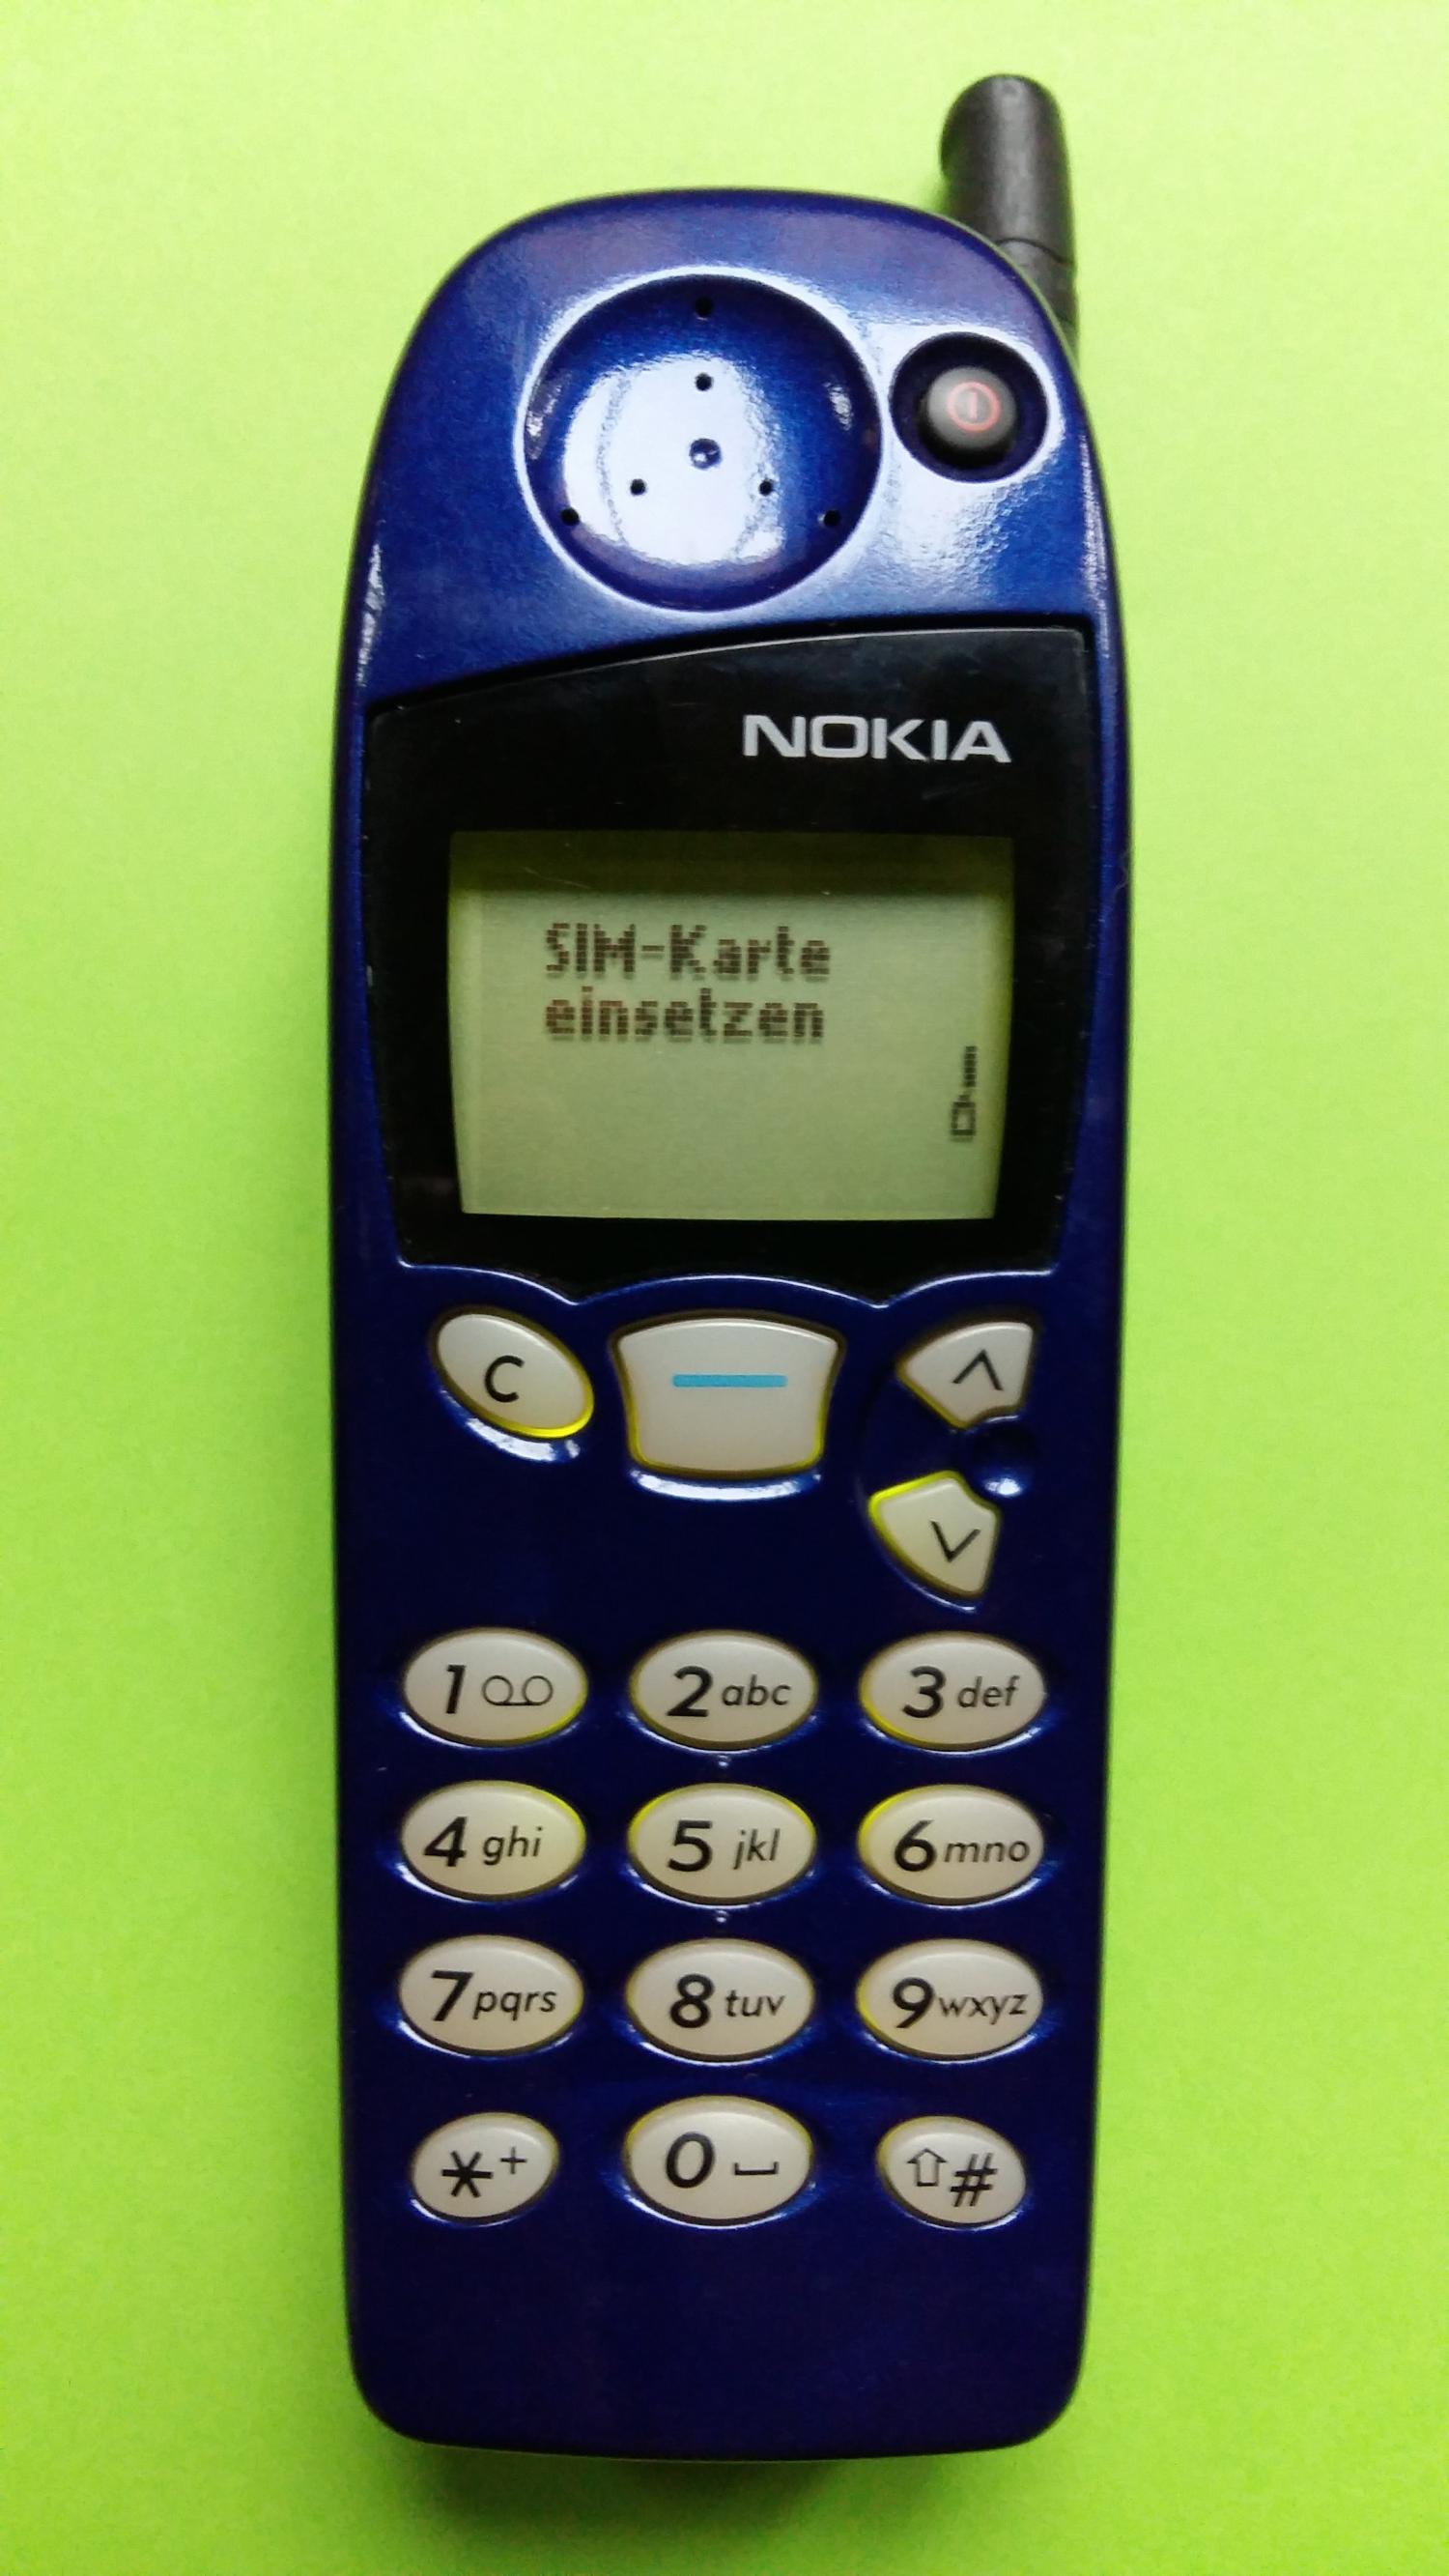 image-7304802-Nokia 5110 (5)1.jpg